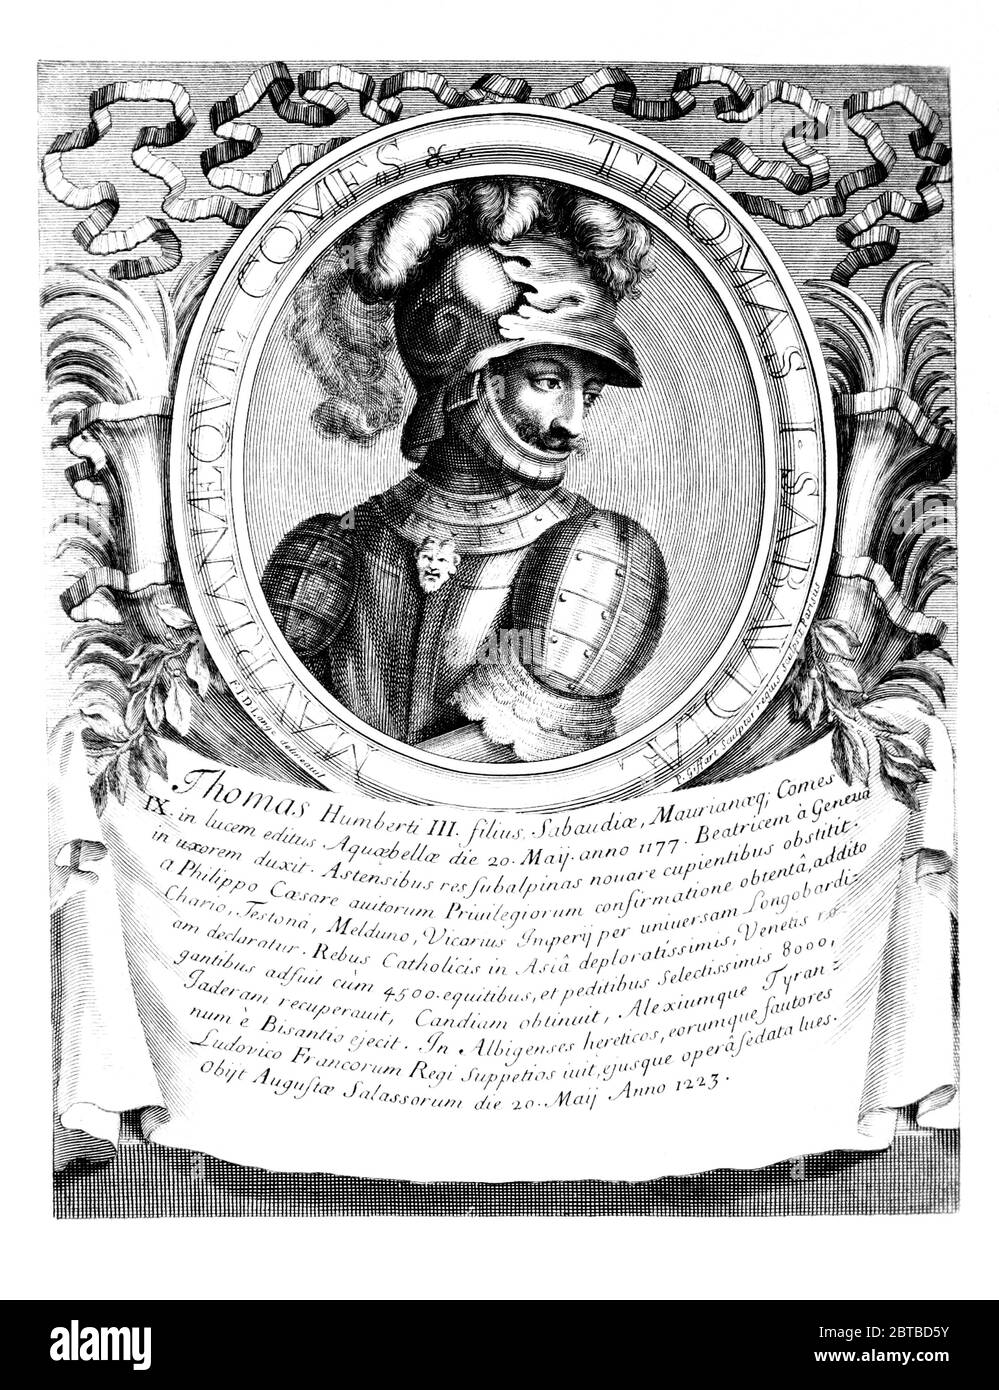 1230 CA , ITALIE: Le Prince italien TOMMASO i di SAVOIA ( 1178 - 1233 ). Portrait de D. Lange, gravé par P. Giffart , Paris , 1702 . - Thomas I - Duc de Savoie - Duc de SAVOYE - SAVOIE - CASA SAVOIA - ITALIA - FRANCIA - REALI - Nobiltà italiana - SAVOIE - NOBLESSE - ROYALTIES - HISTOIRE - FOTO STORICHE --- Archivio GBB Banque D'Images